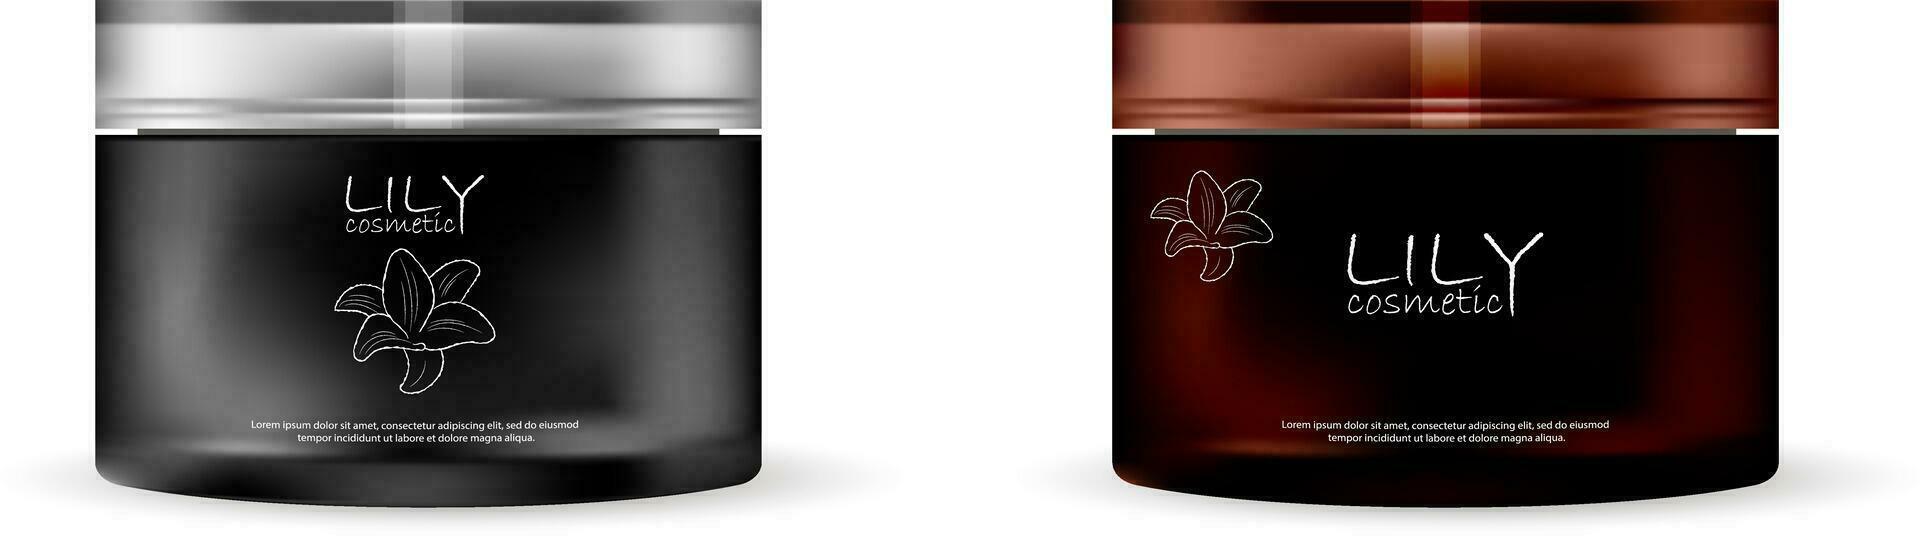 zwart en bruin glas plastic kunstmatig room pot reeks met Gesloten deksel. realistisch vector illustratie met verschillend sluw logo ontwerp.